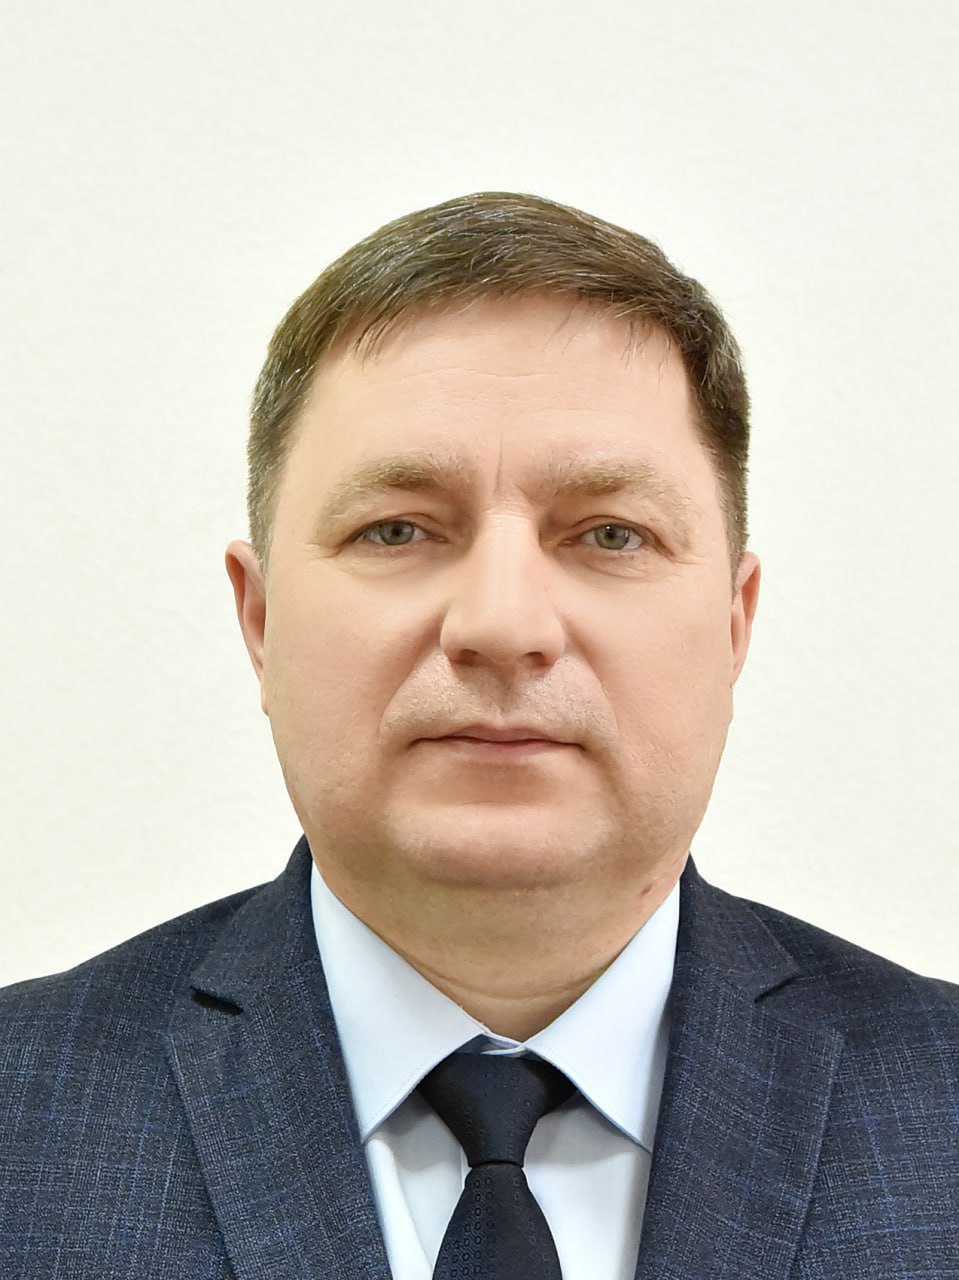 Александр Болдакин утвердил на должность исполняющего обязанности заместителя Главы города Сергея Мальчёнкова.